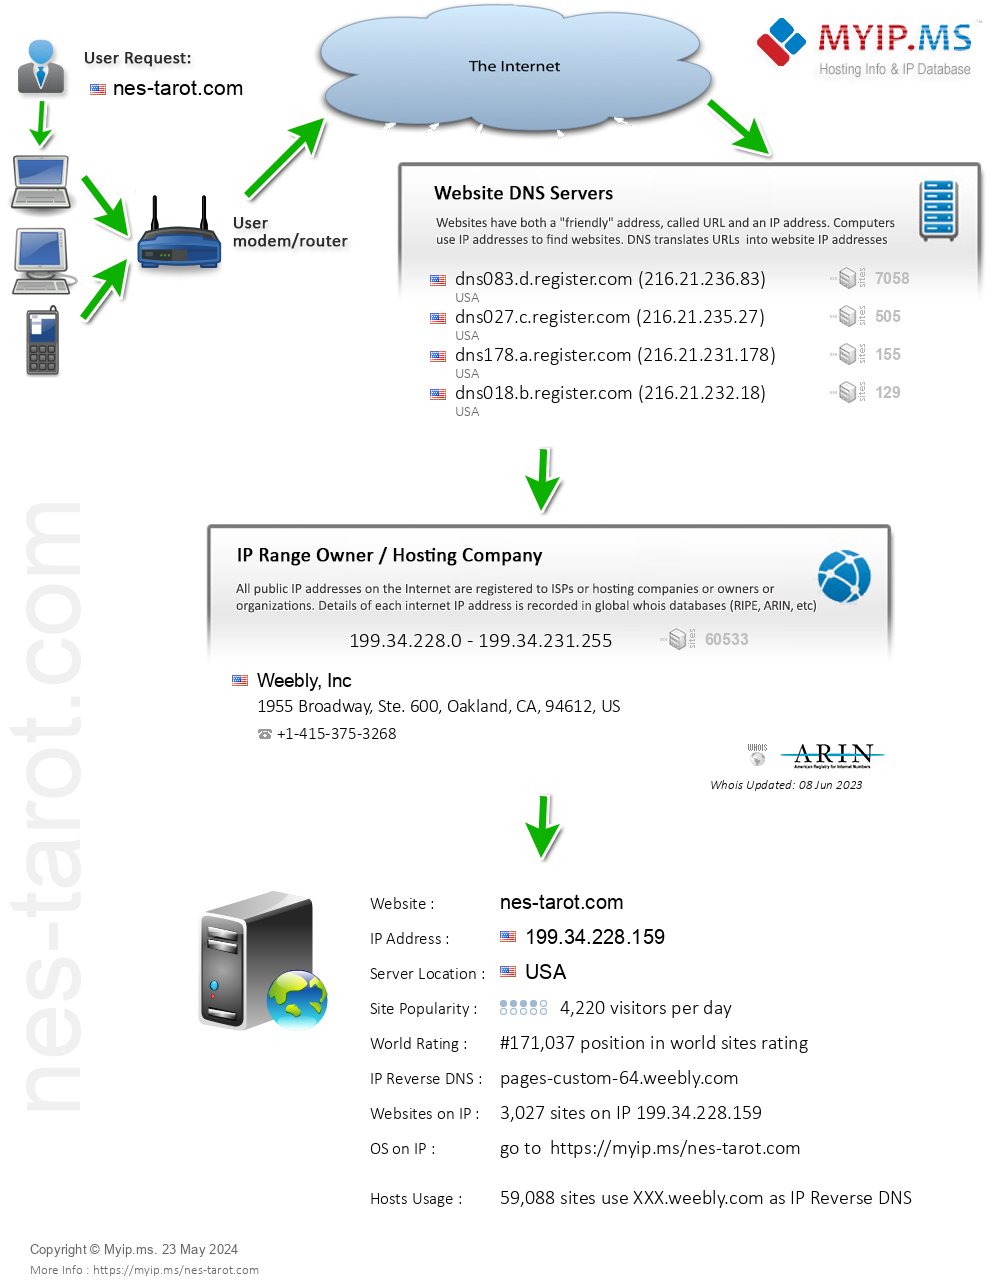 Nes-tarot.com - Website Hosting Visual IP Diagram